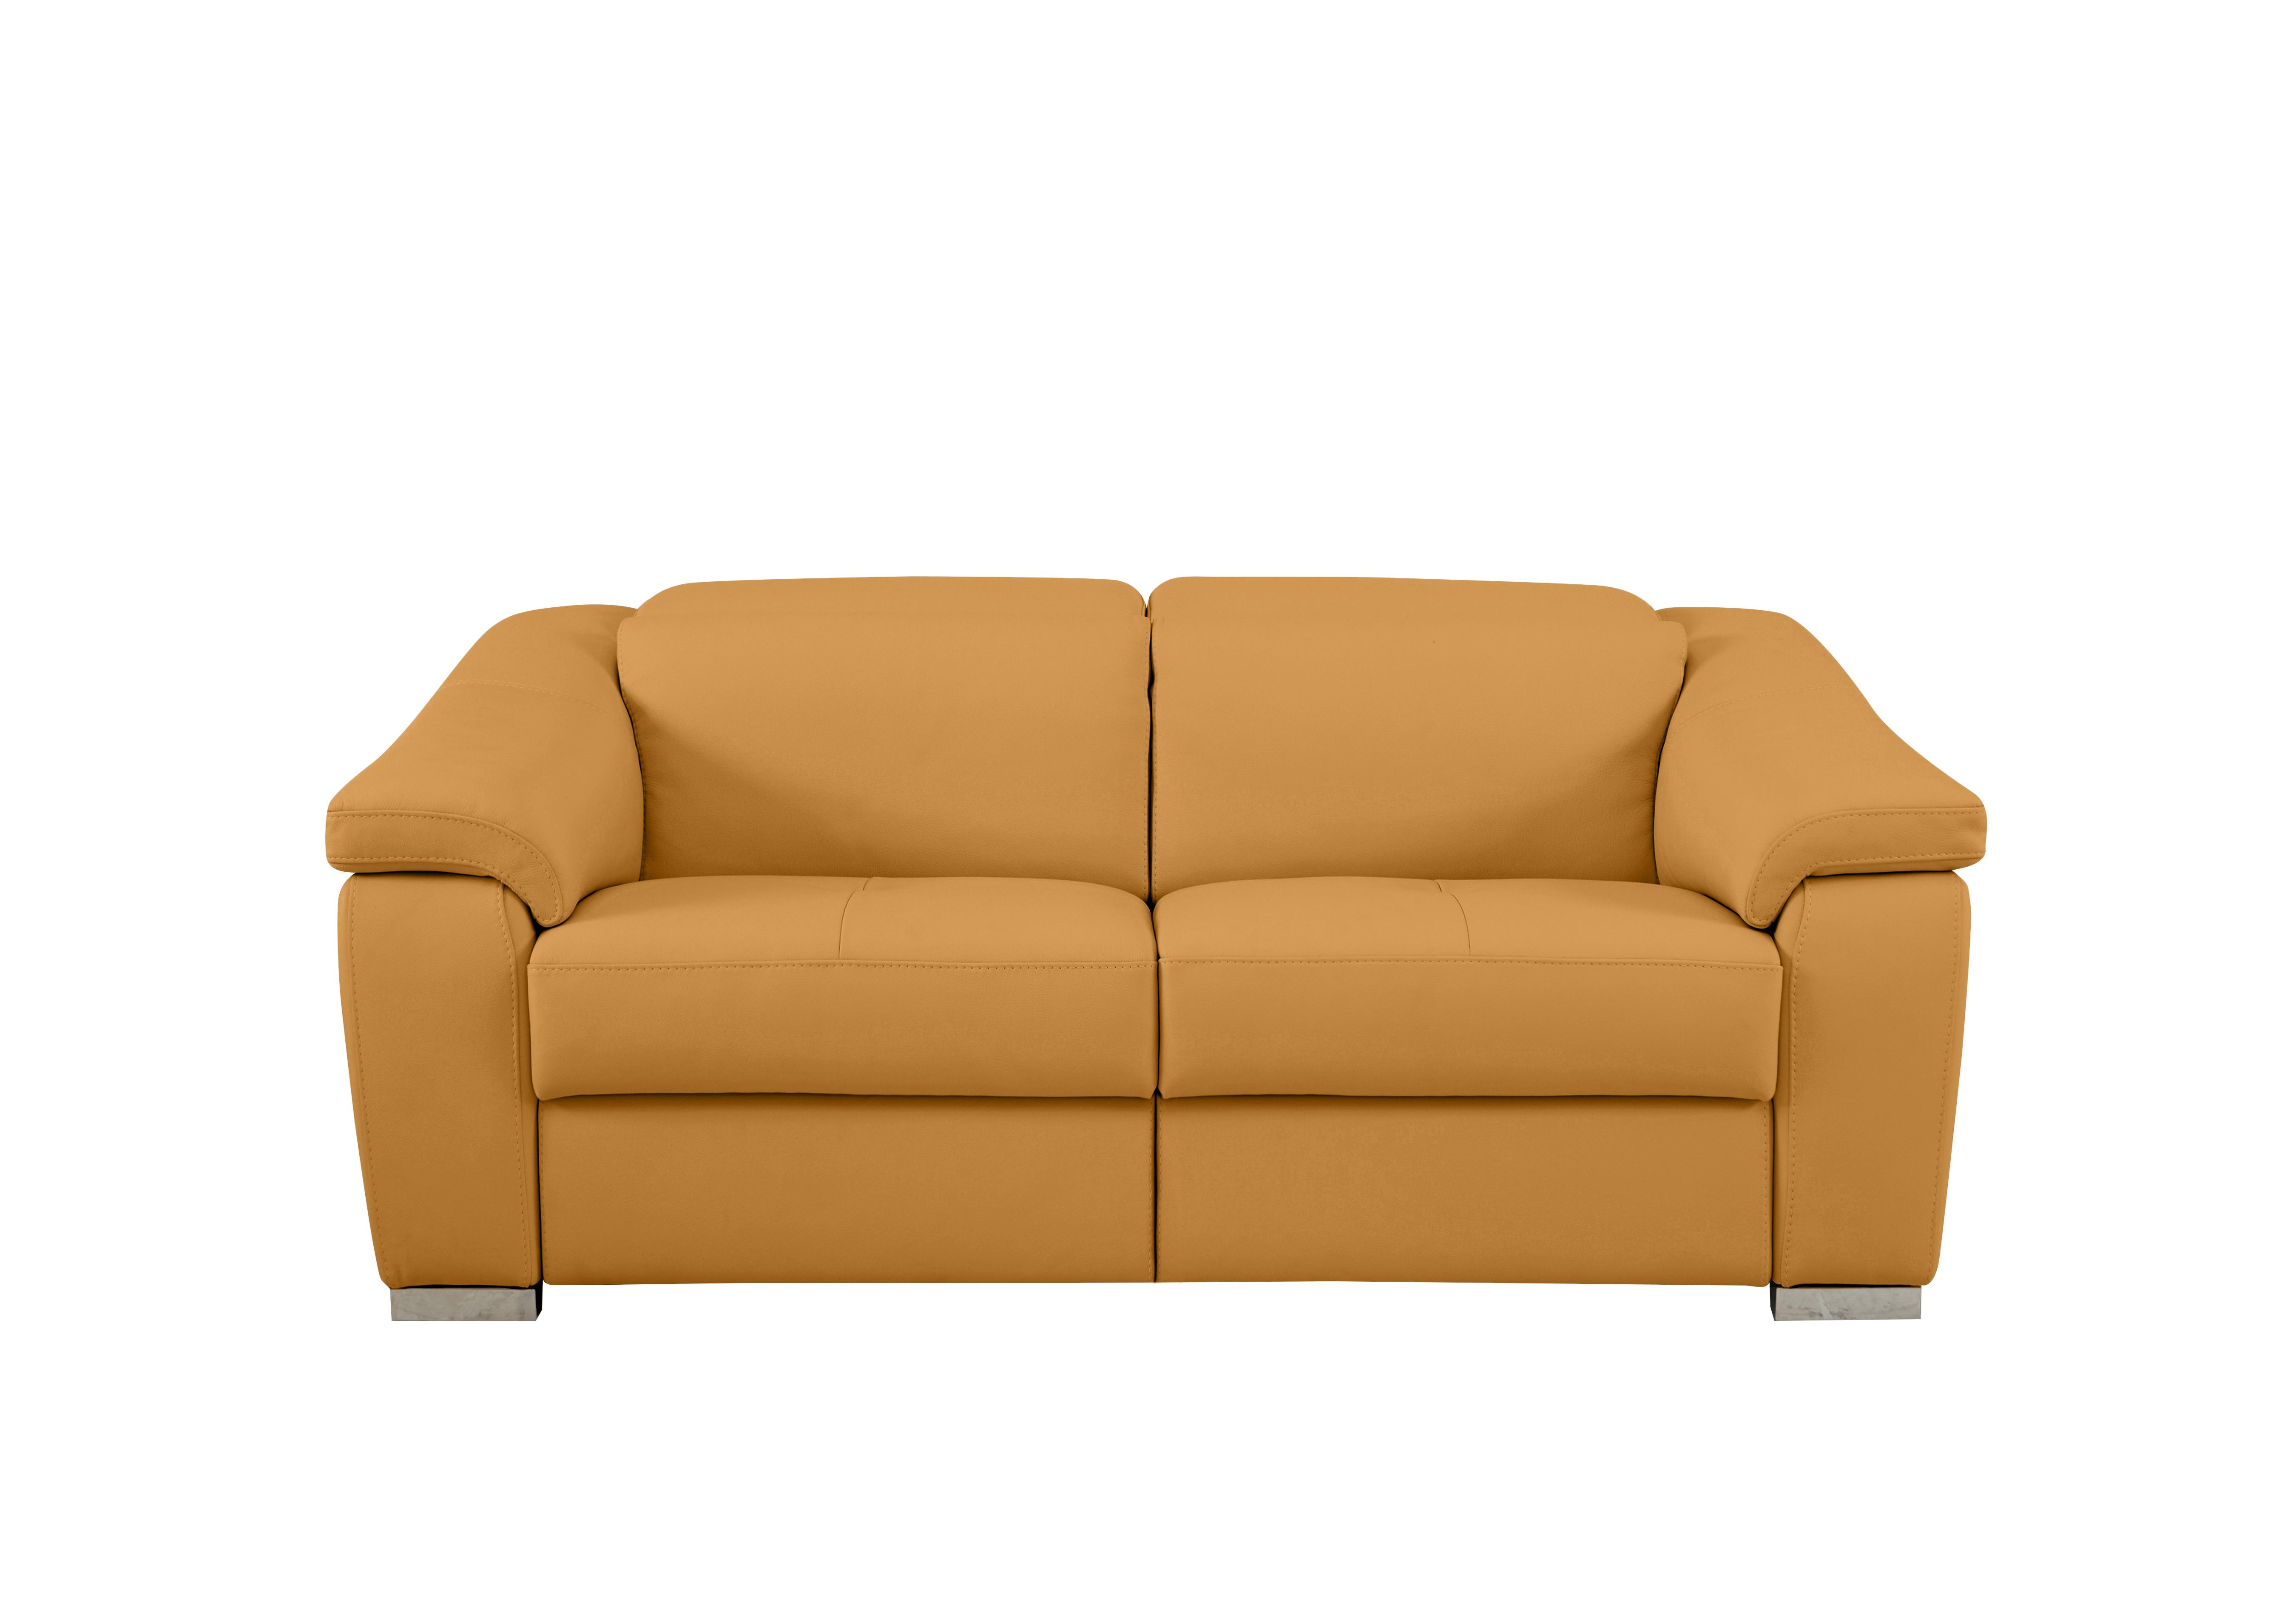 Galileo 2 Seater Leather Sofa in Torello Senape 355 Ch on Furniture Village